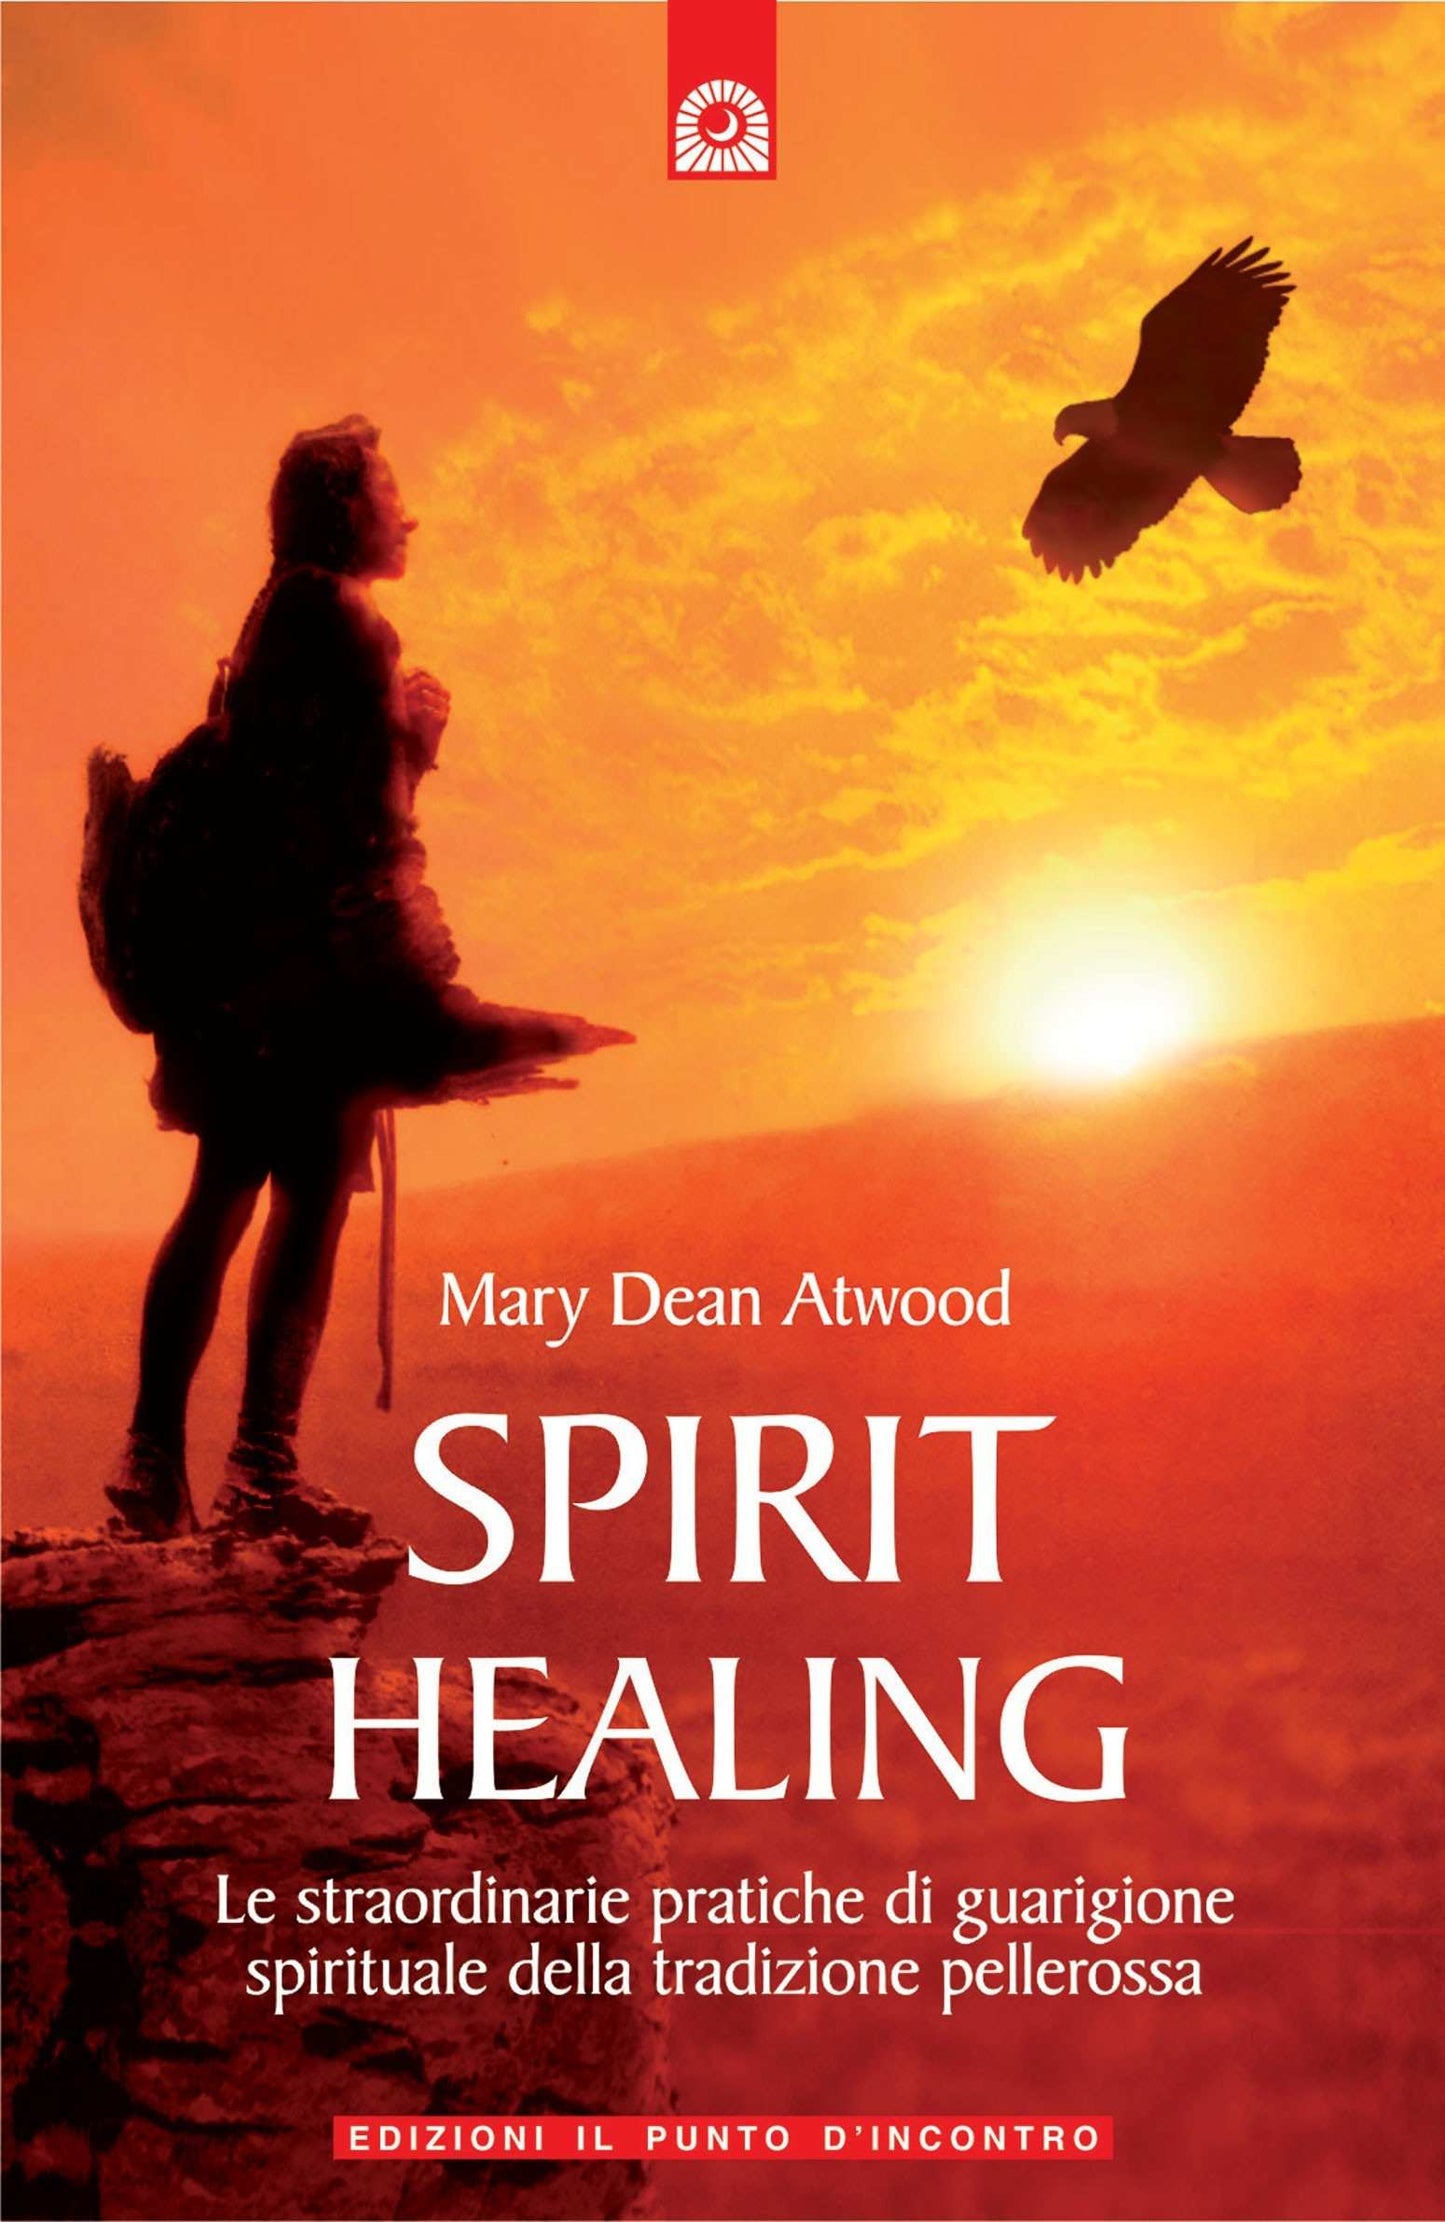 Spirit healing